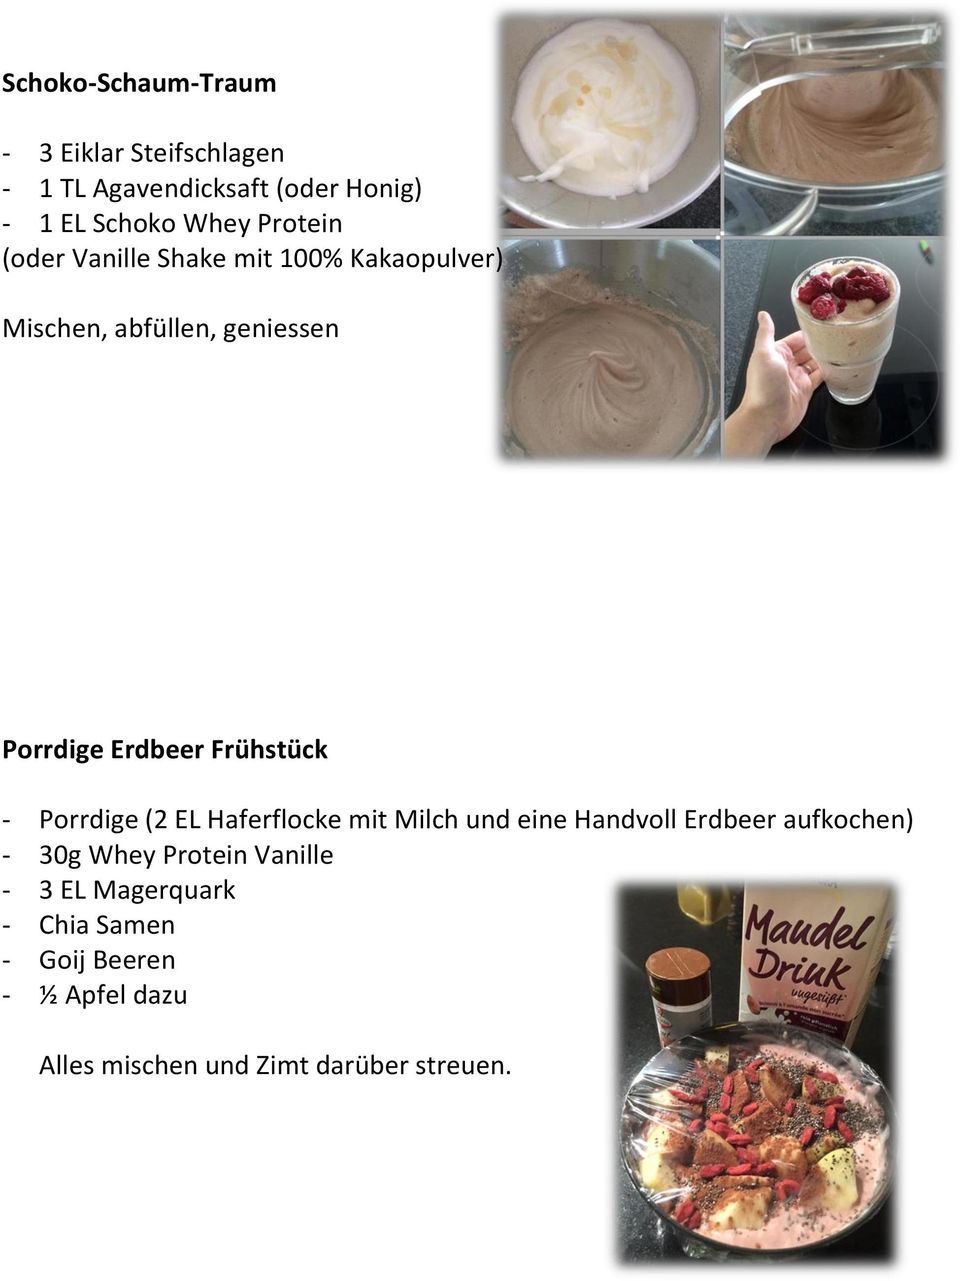 Frühstück - Porrdige (2 EL Haferflocke mit Milch und eine Handvoll Erdbeer aufkochen) - 30g Whey